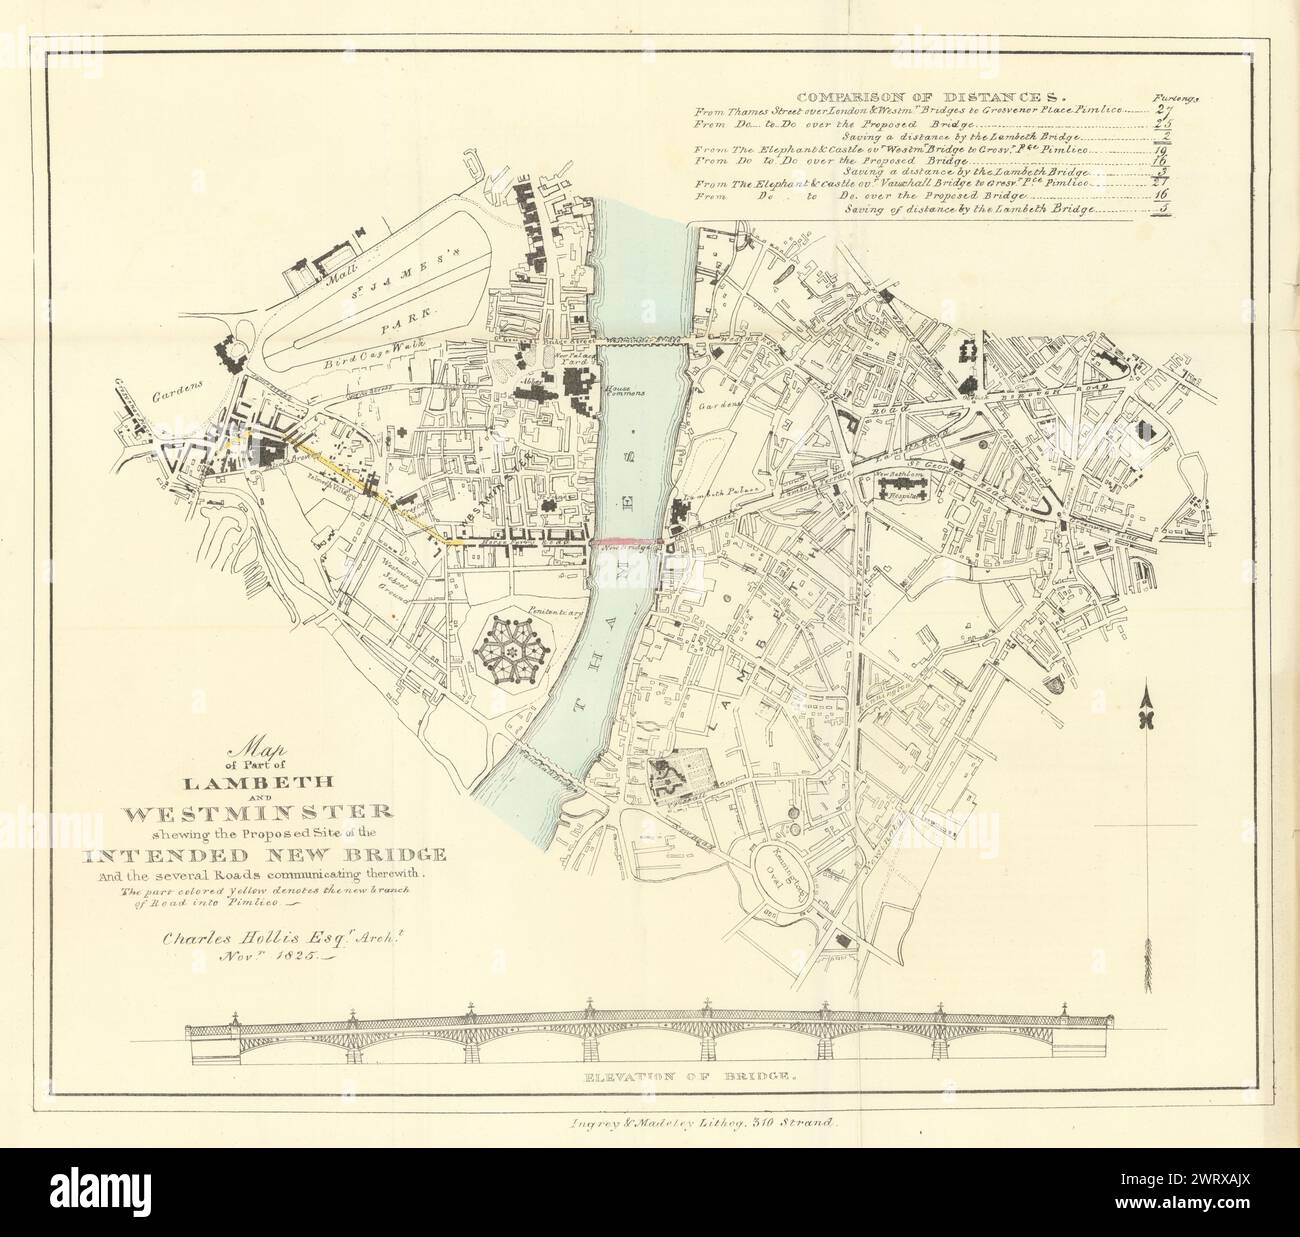 Ein Teil von Lambeth & Westminster, der… Geplante neue Brücke. HOLLIS 1827 Karte Stockfoto